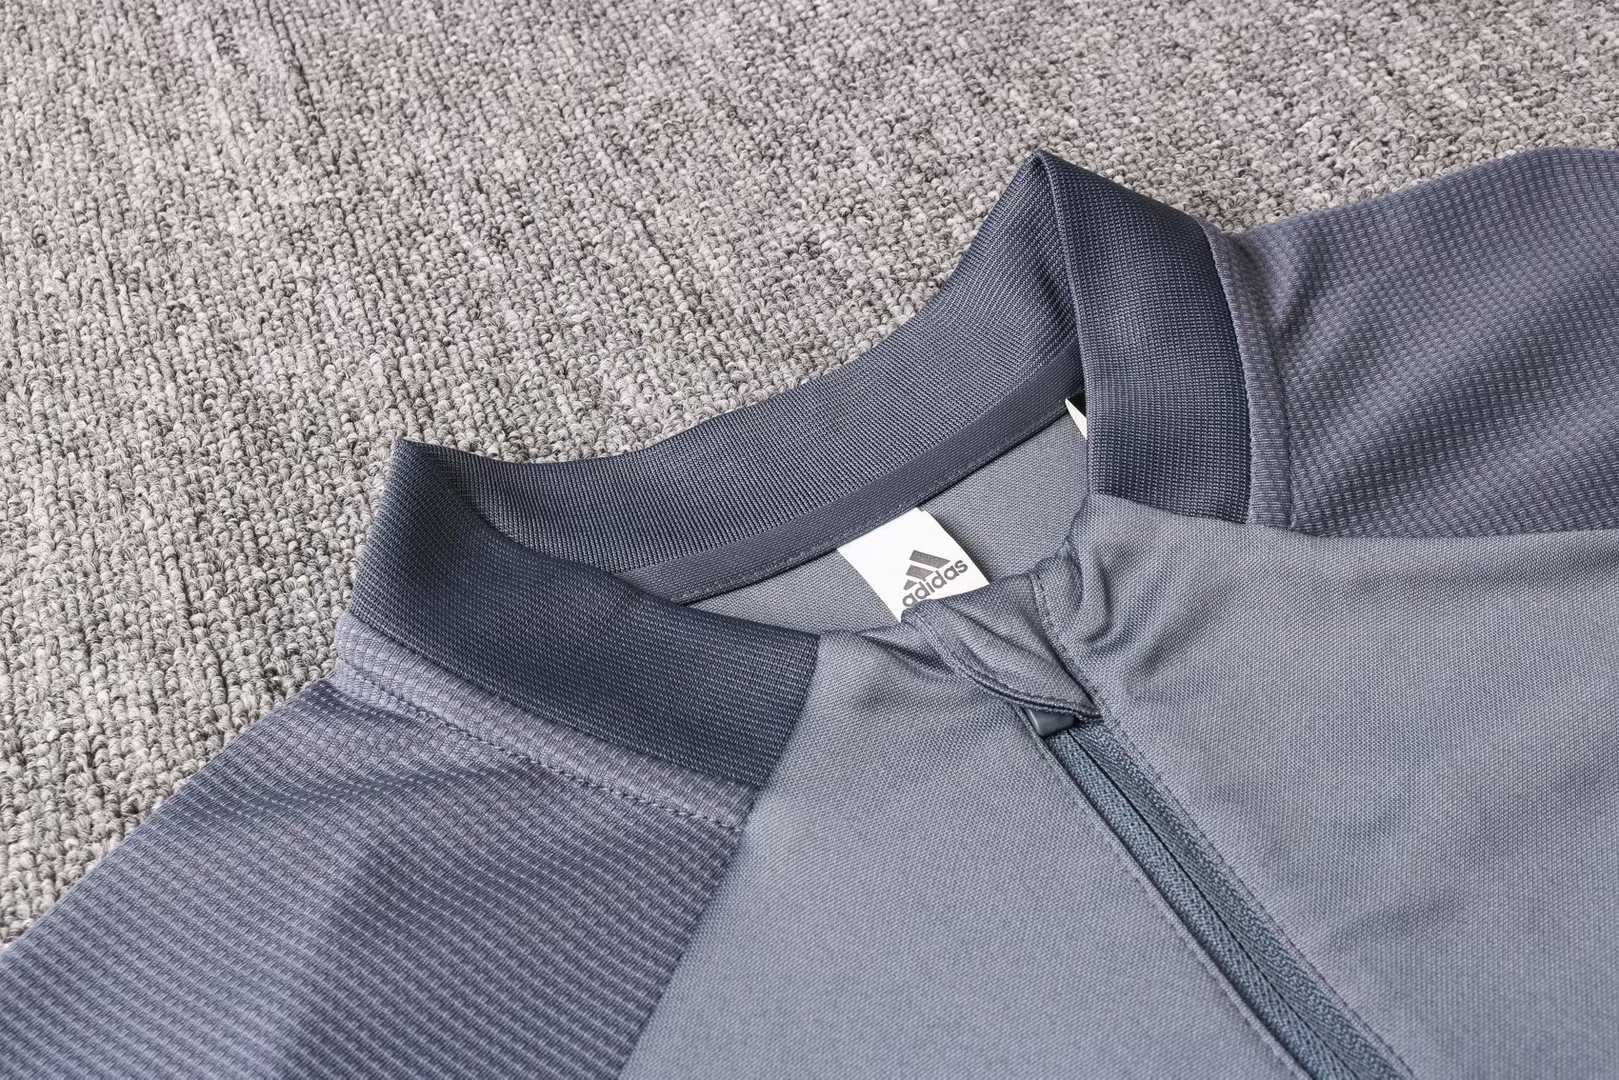 2020/21 Germany Light Grey II Half Zip Mens Soccer Training Suit(SweatJersey + Pants)